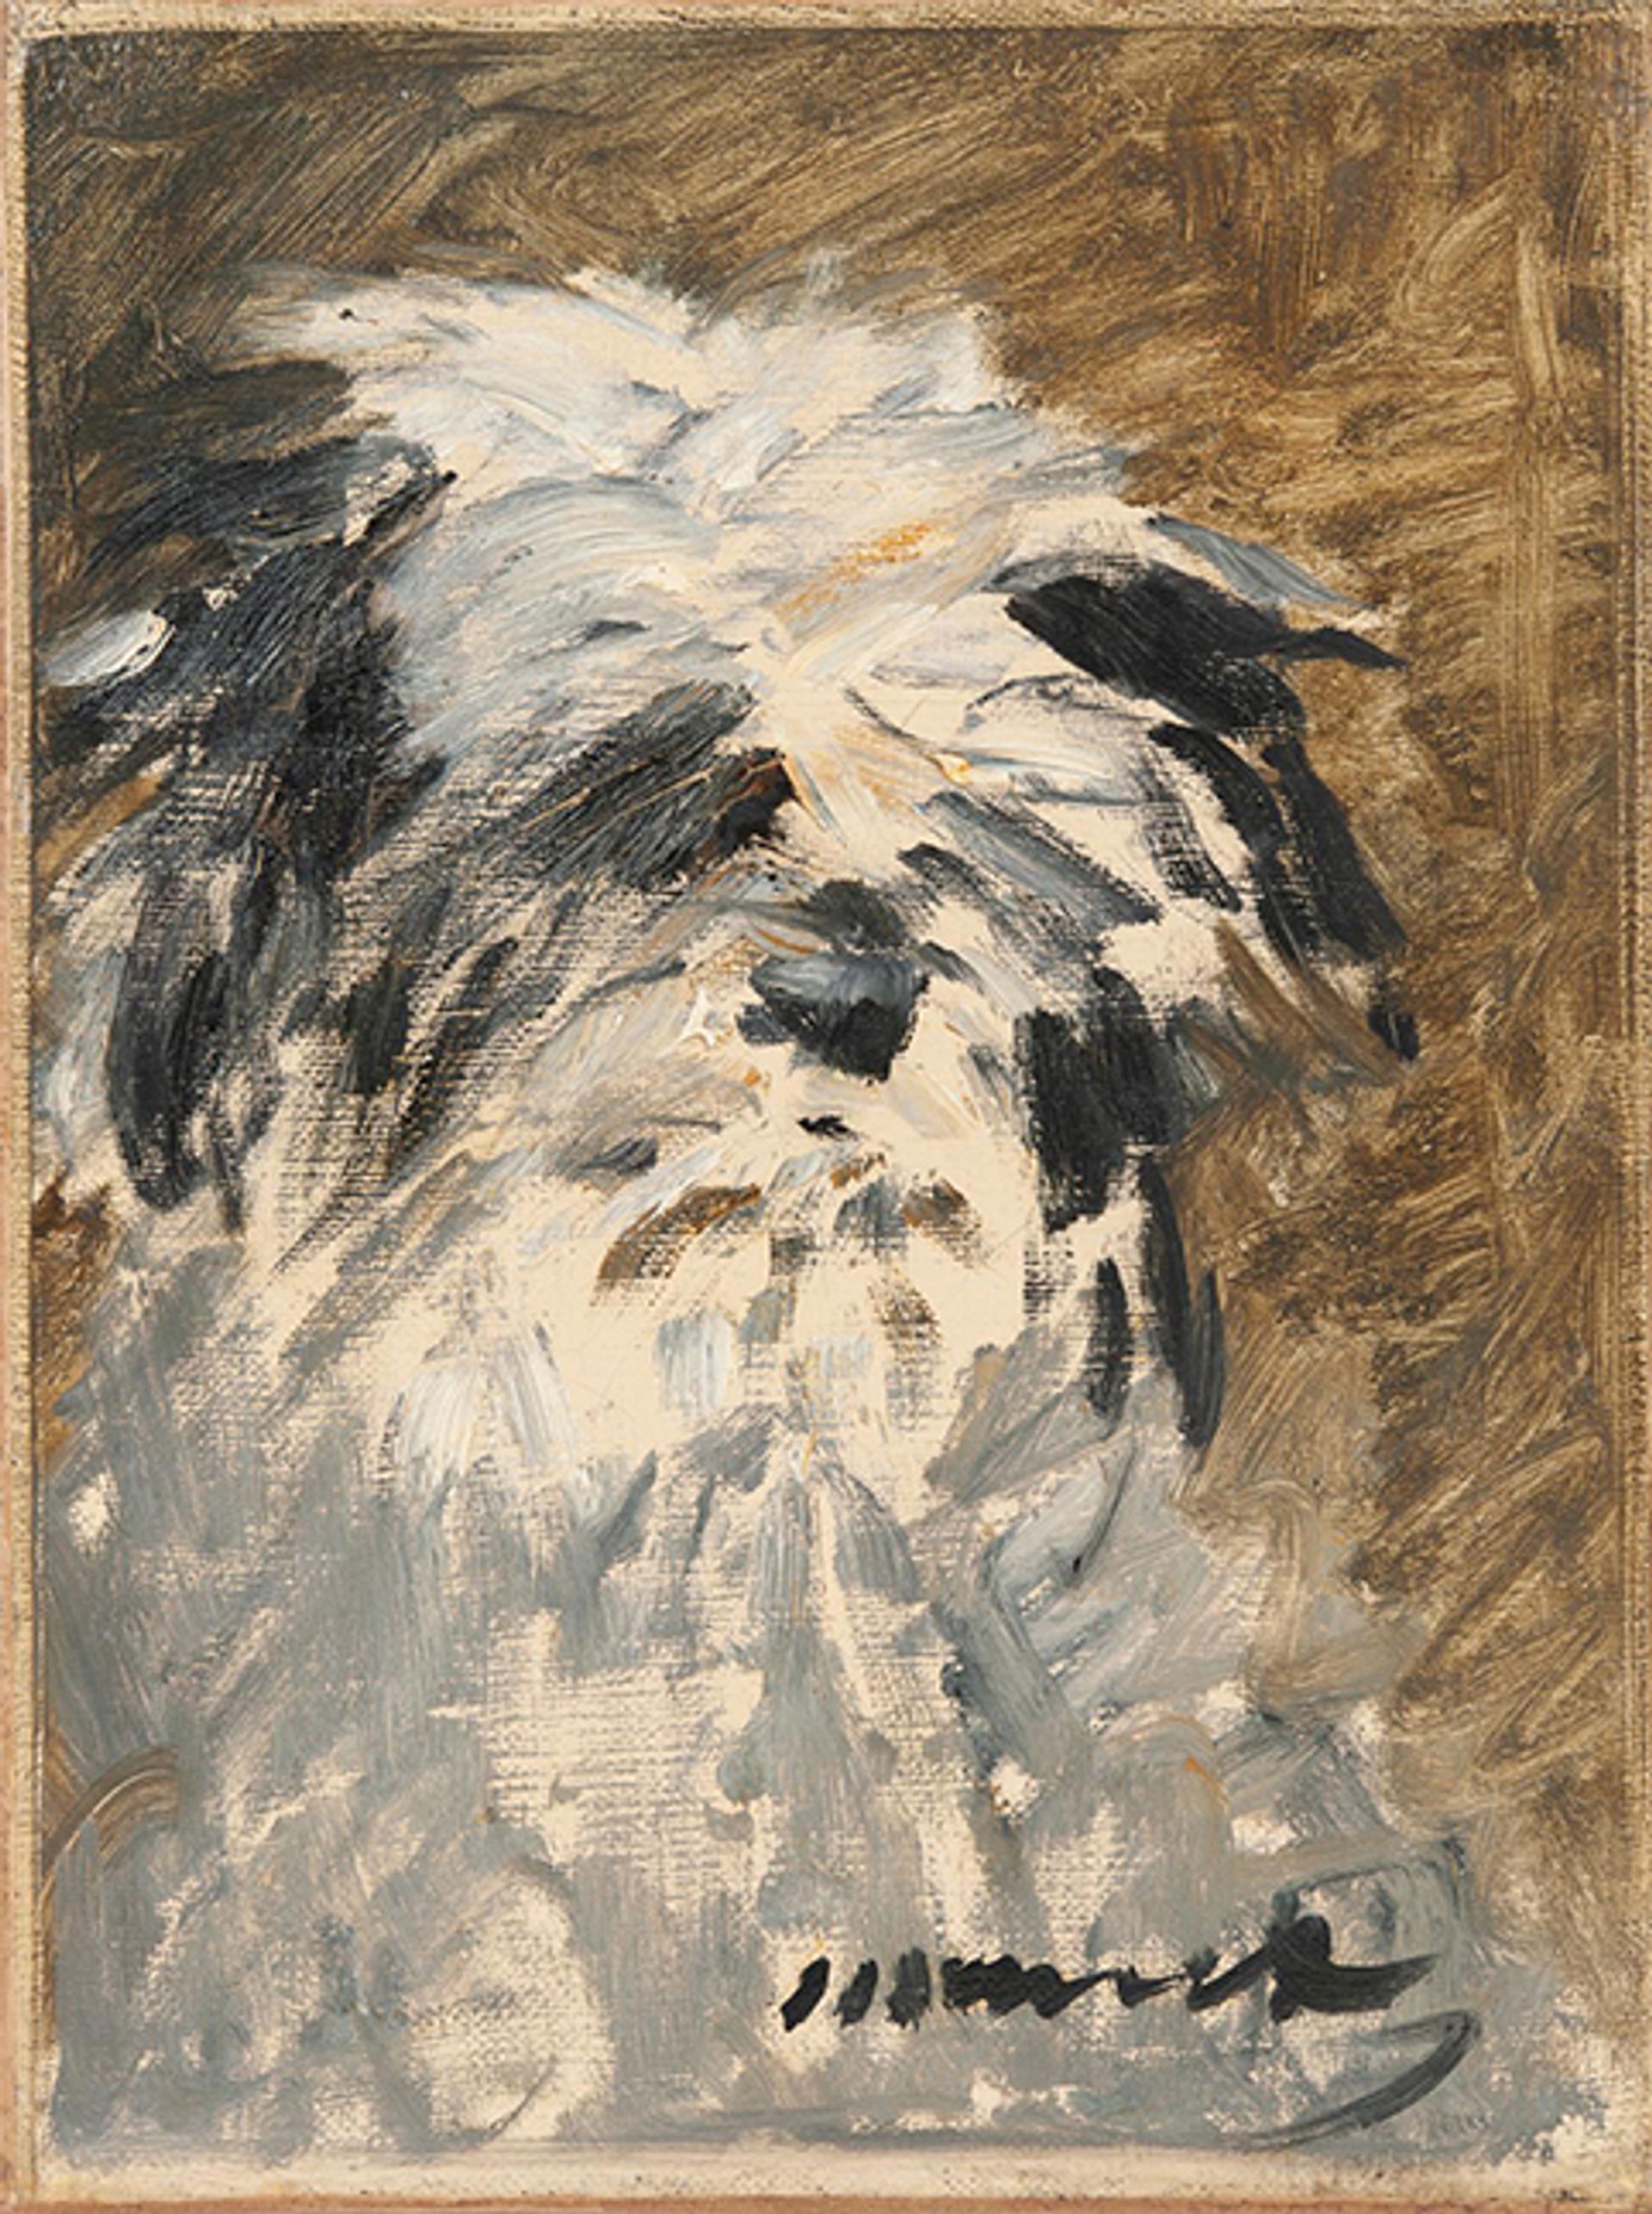 Édouard Manet, Portrait de Minnay, vers 1879, huile sur toile, 32,5 x 24,5 cm. Vendu 520 800 euros. Courtesy Drouot